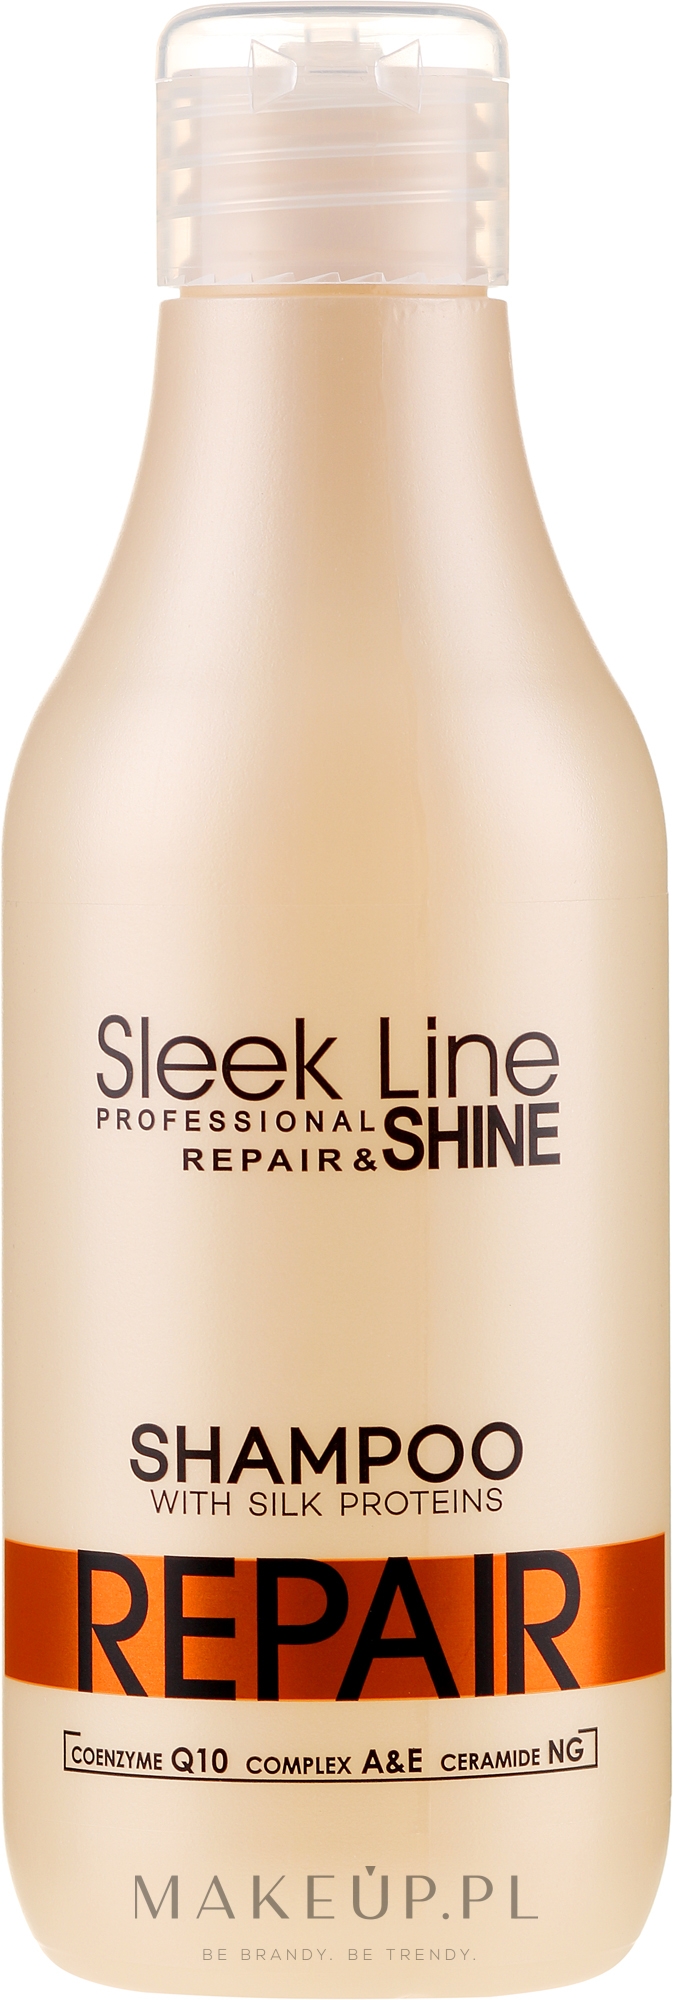 stapiz szampon z jedwabiem sleek line repair 1l